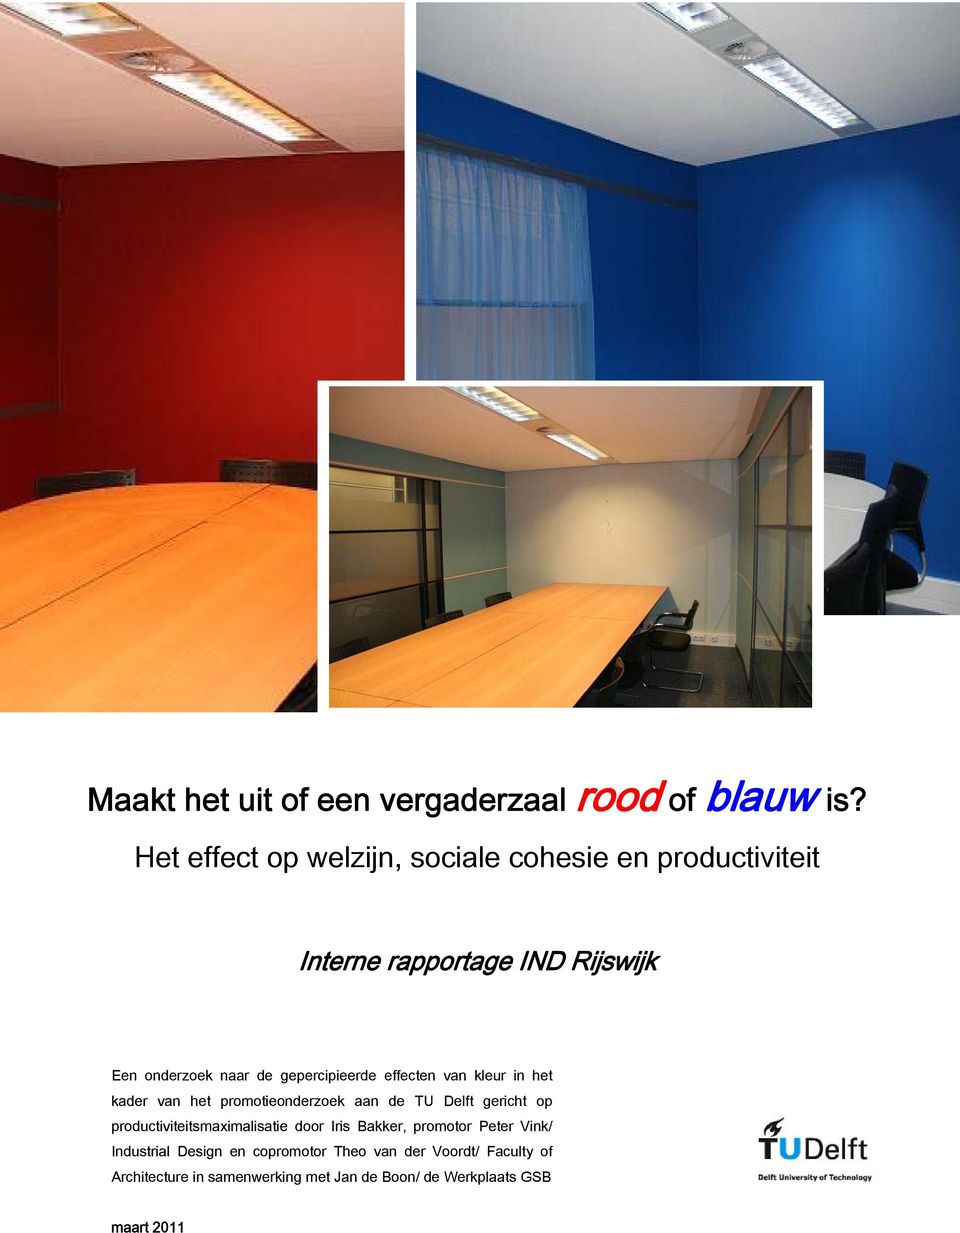 gepercipieerde effecten van kleur in het kader van het promotieonderzoek aan de TU Delft gericht op